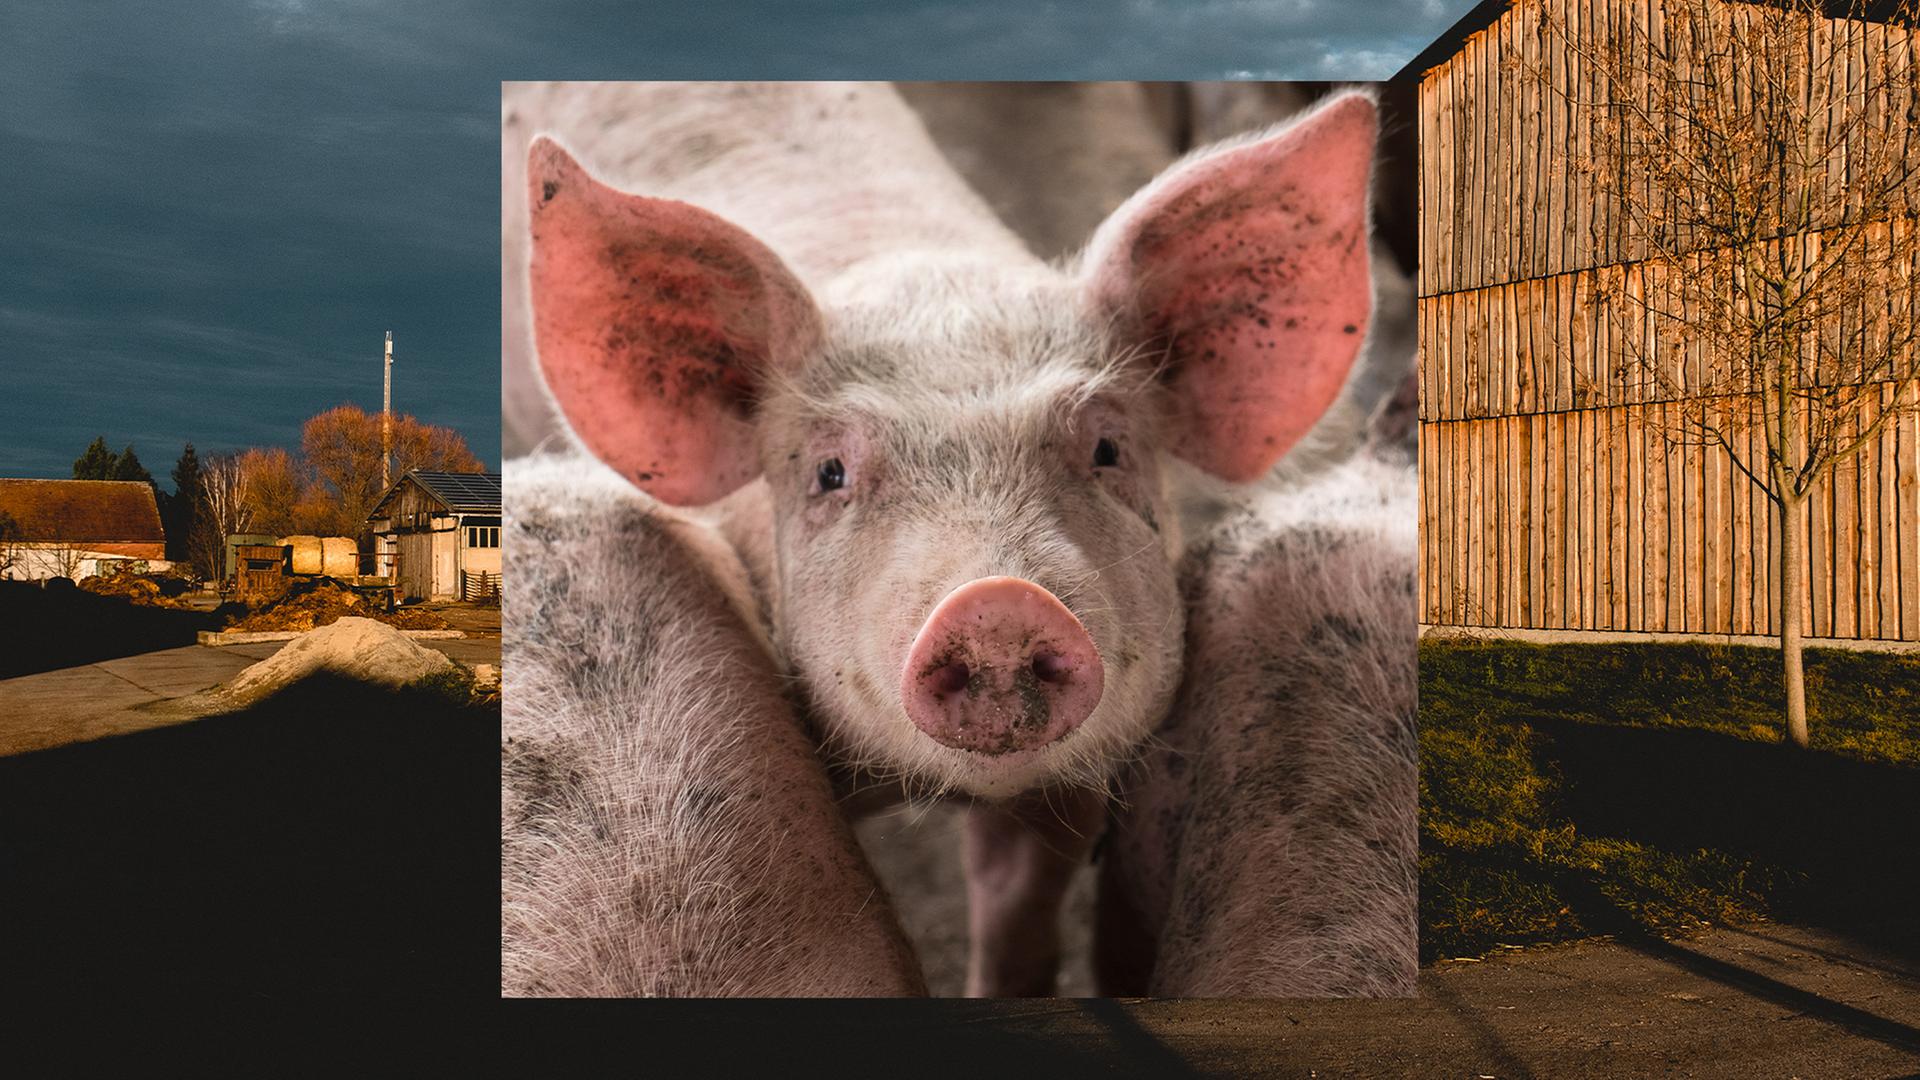 Bild in Bild: Vorn ein Schwein mit erhobenem Kopf zwischen zwei anderen Schweinen. Hintergrund: Bauernhofkulisse bei Abendlicht.